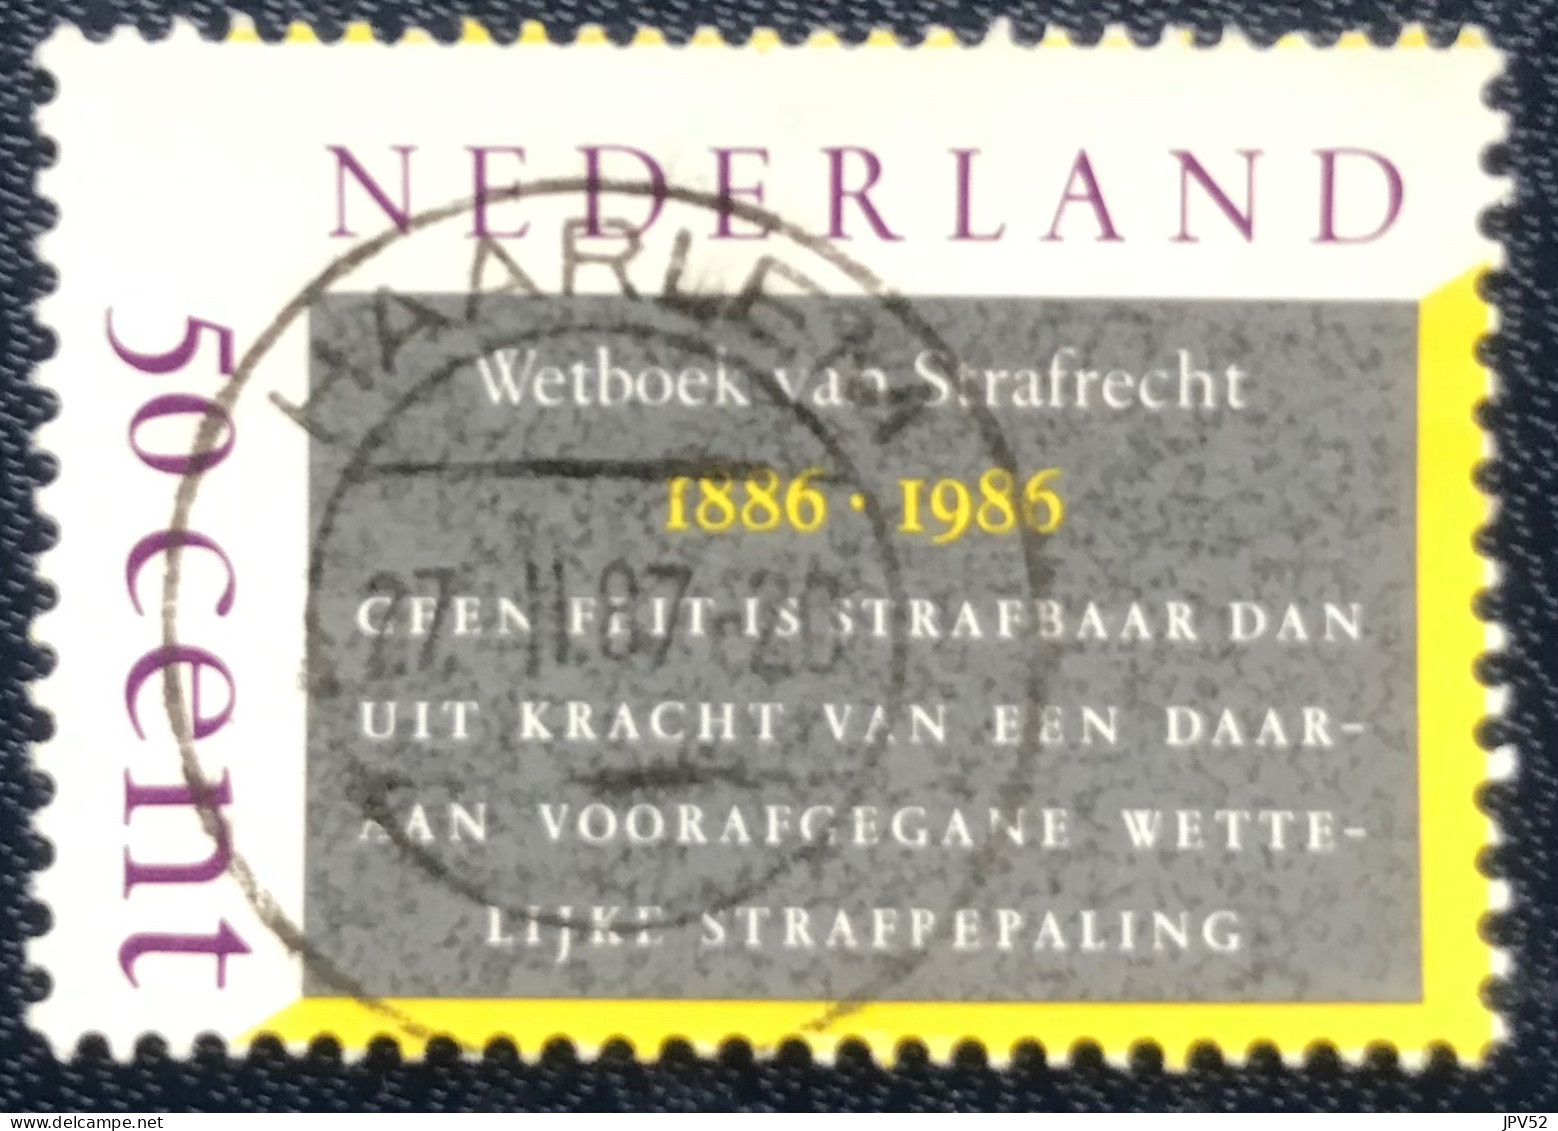 Nederland - C1/24 - 1985 - (°)used - Michel 1285 - 100j Wetboek Van Strafrecht - HAARLEM - Gebruikt